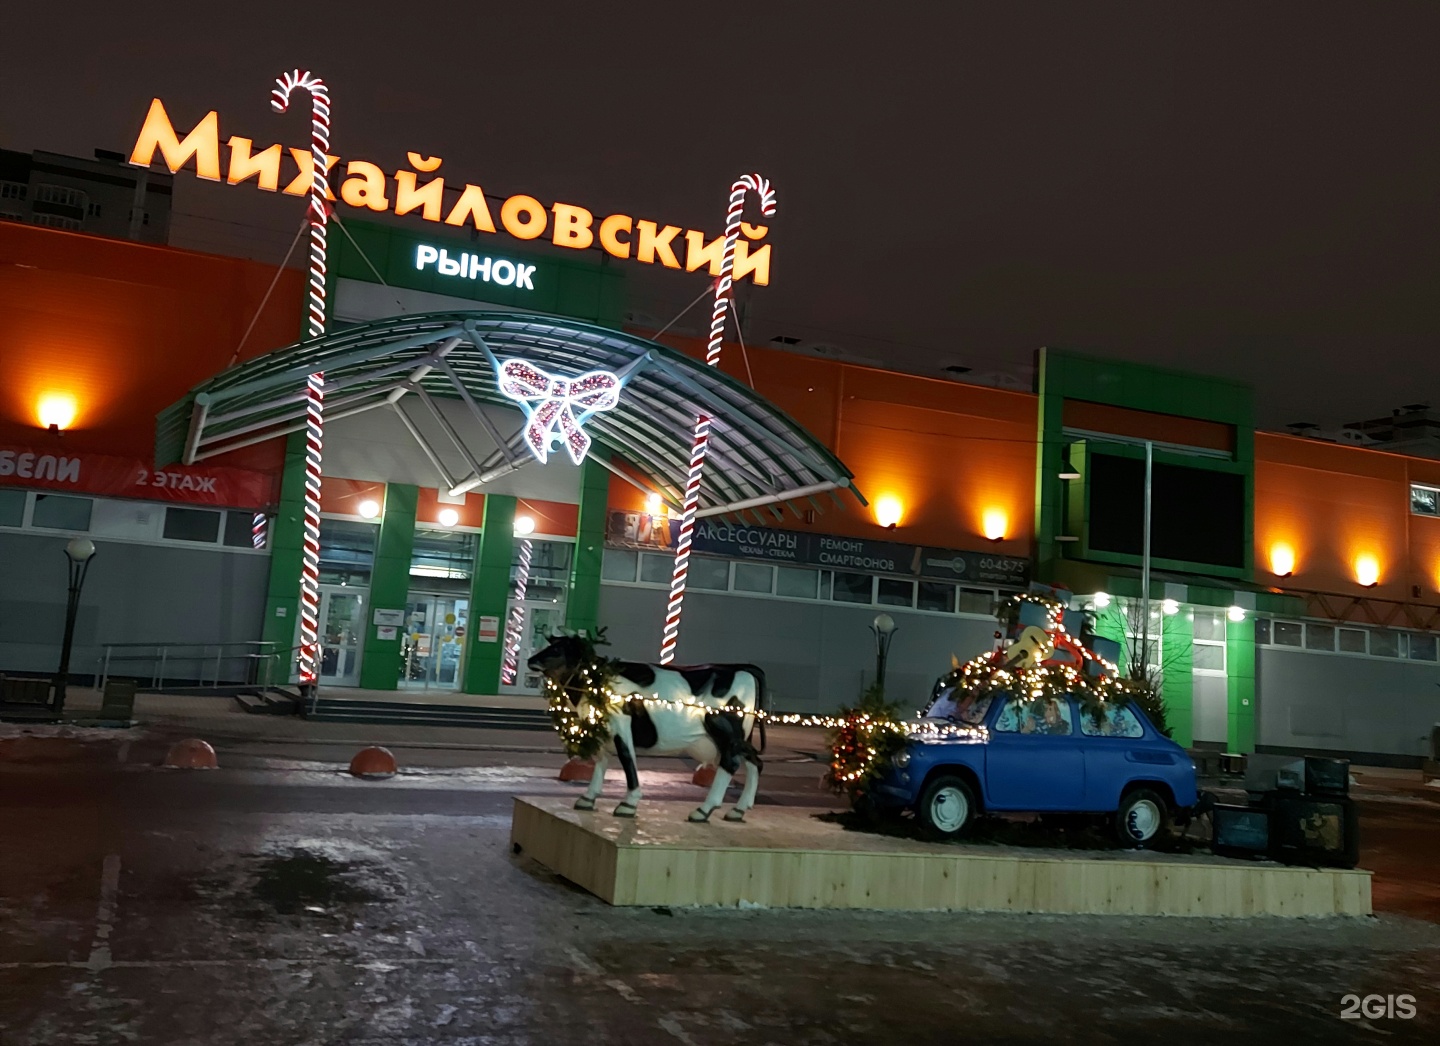 Михайловский Рынок Тюмень Магазины